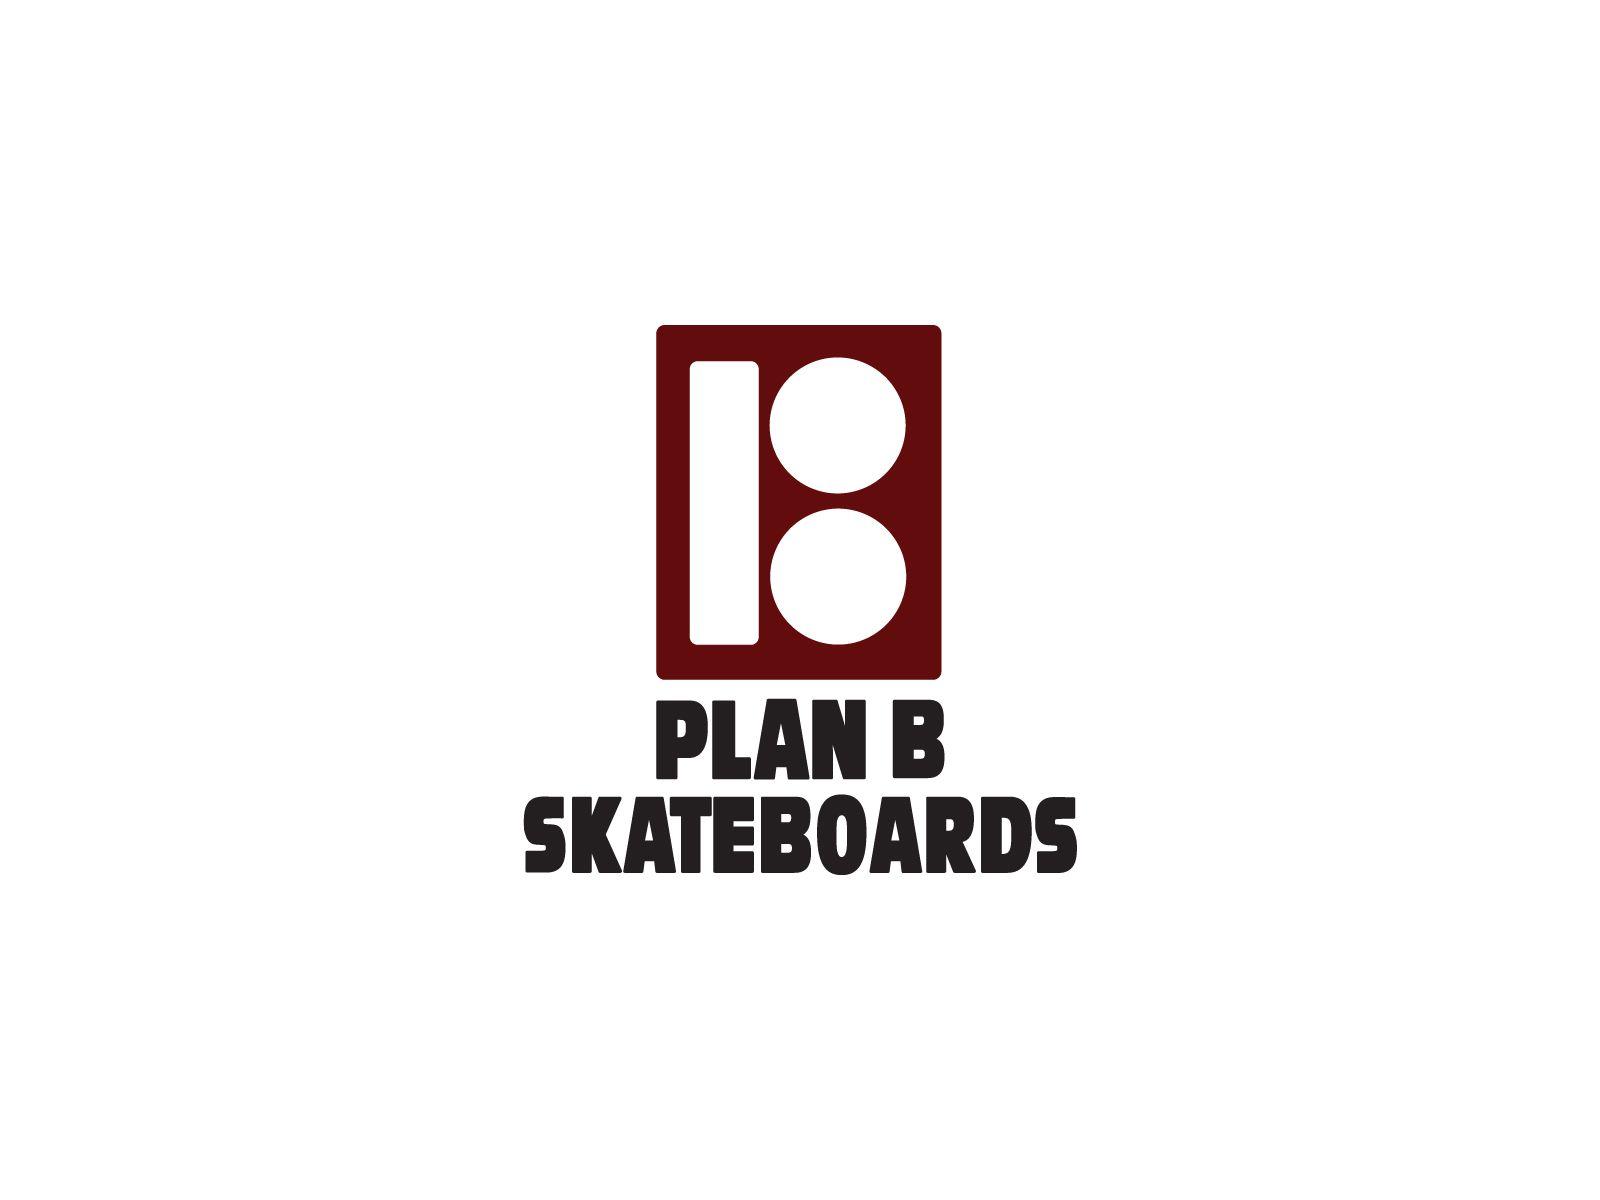 Wallpaper For > Skateboard Wallpaper Plan B